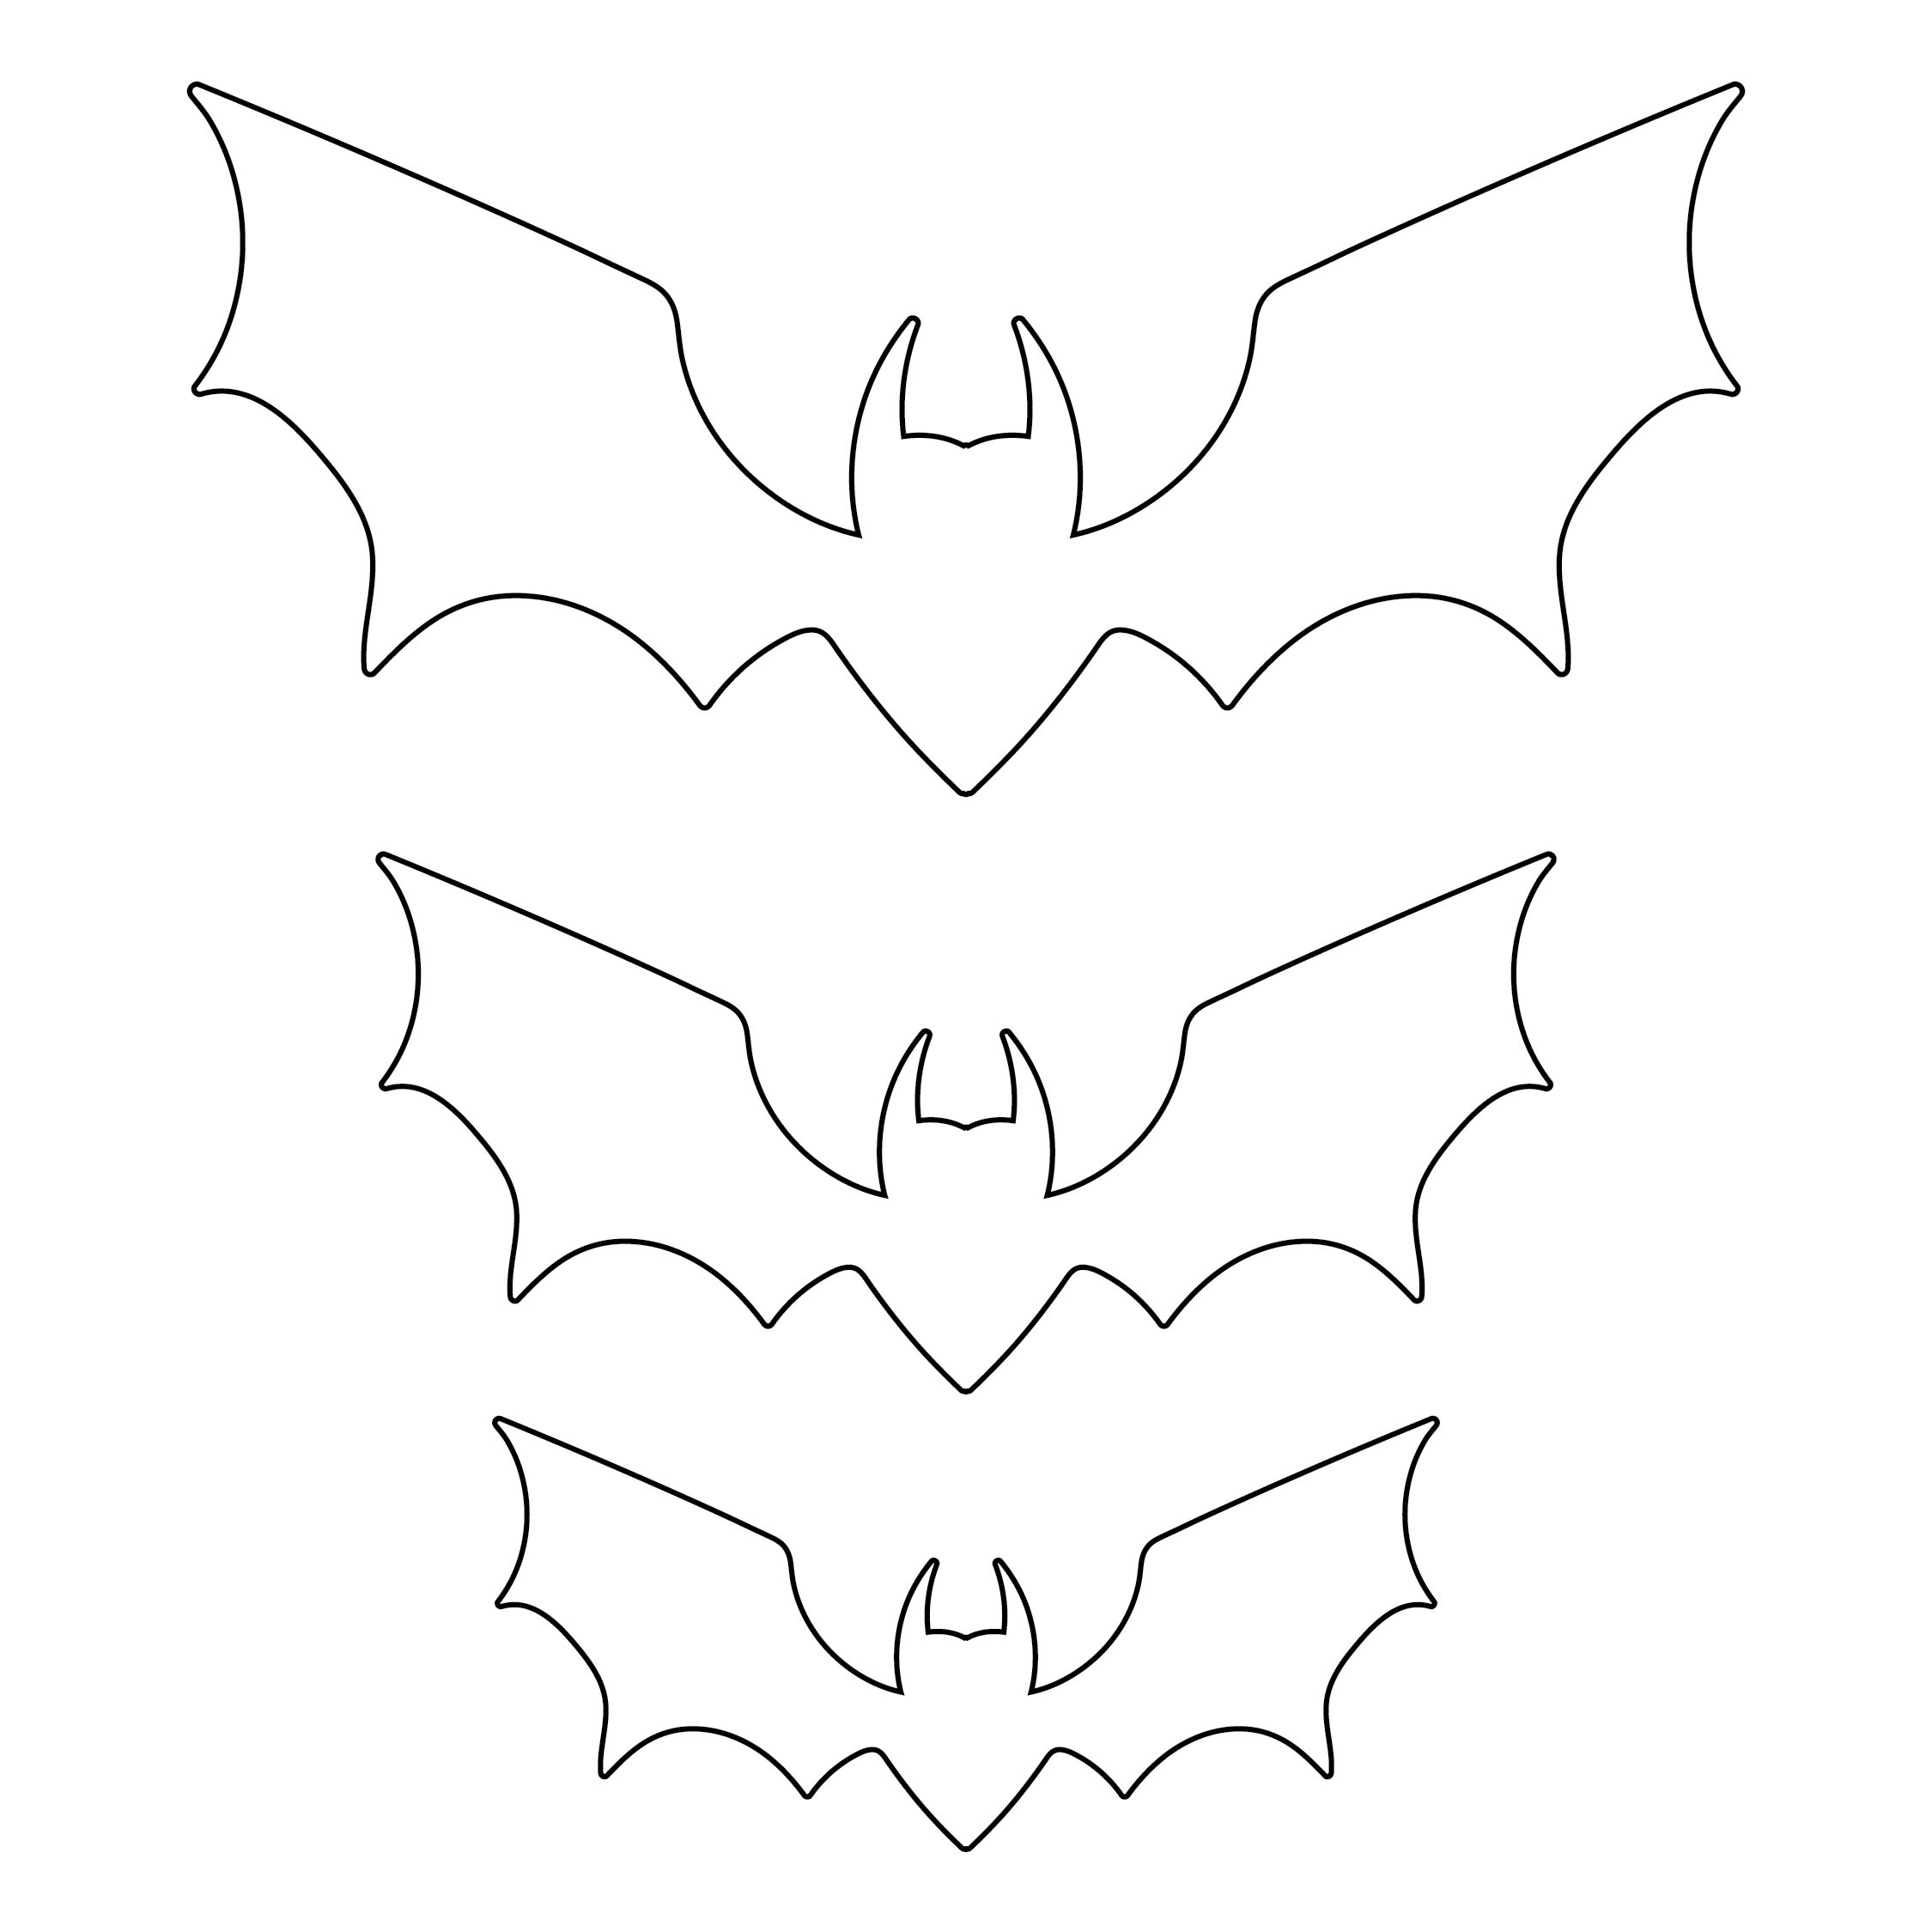 Bat Cutouts Printable